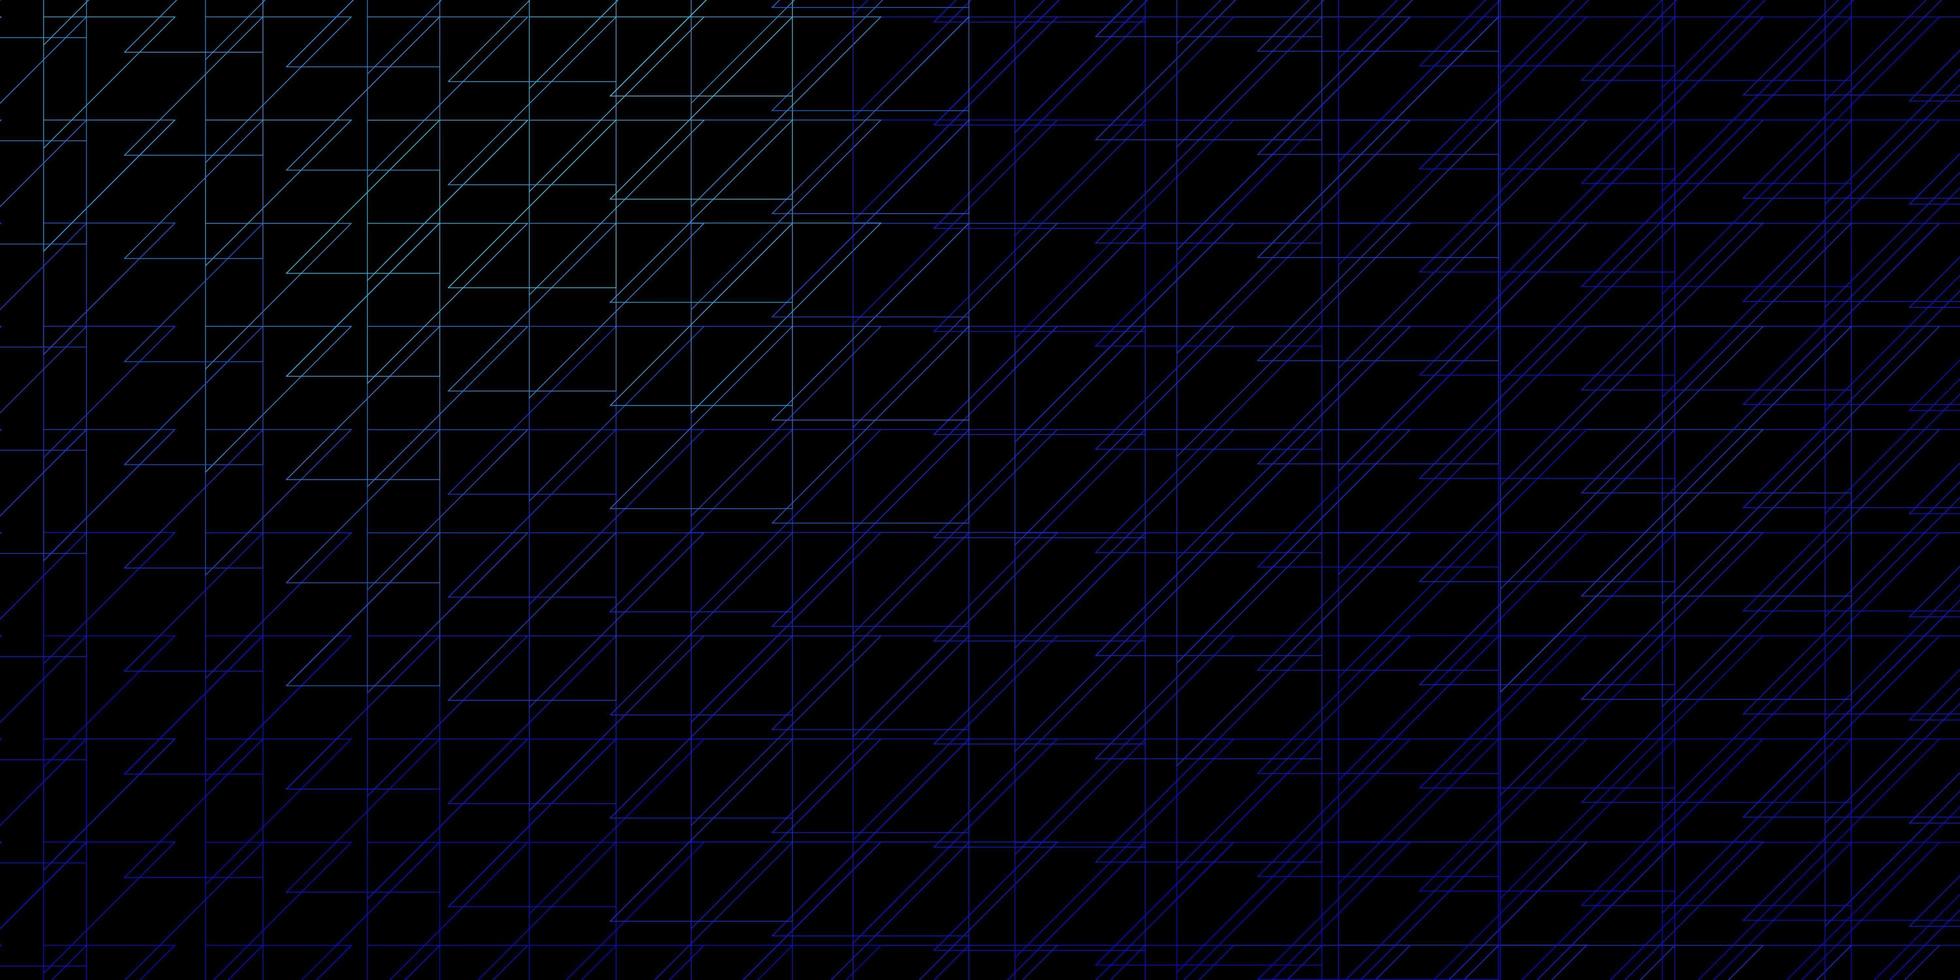 dunkelblaue Vektortextur mit Linien. vektor